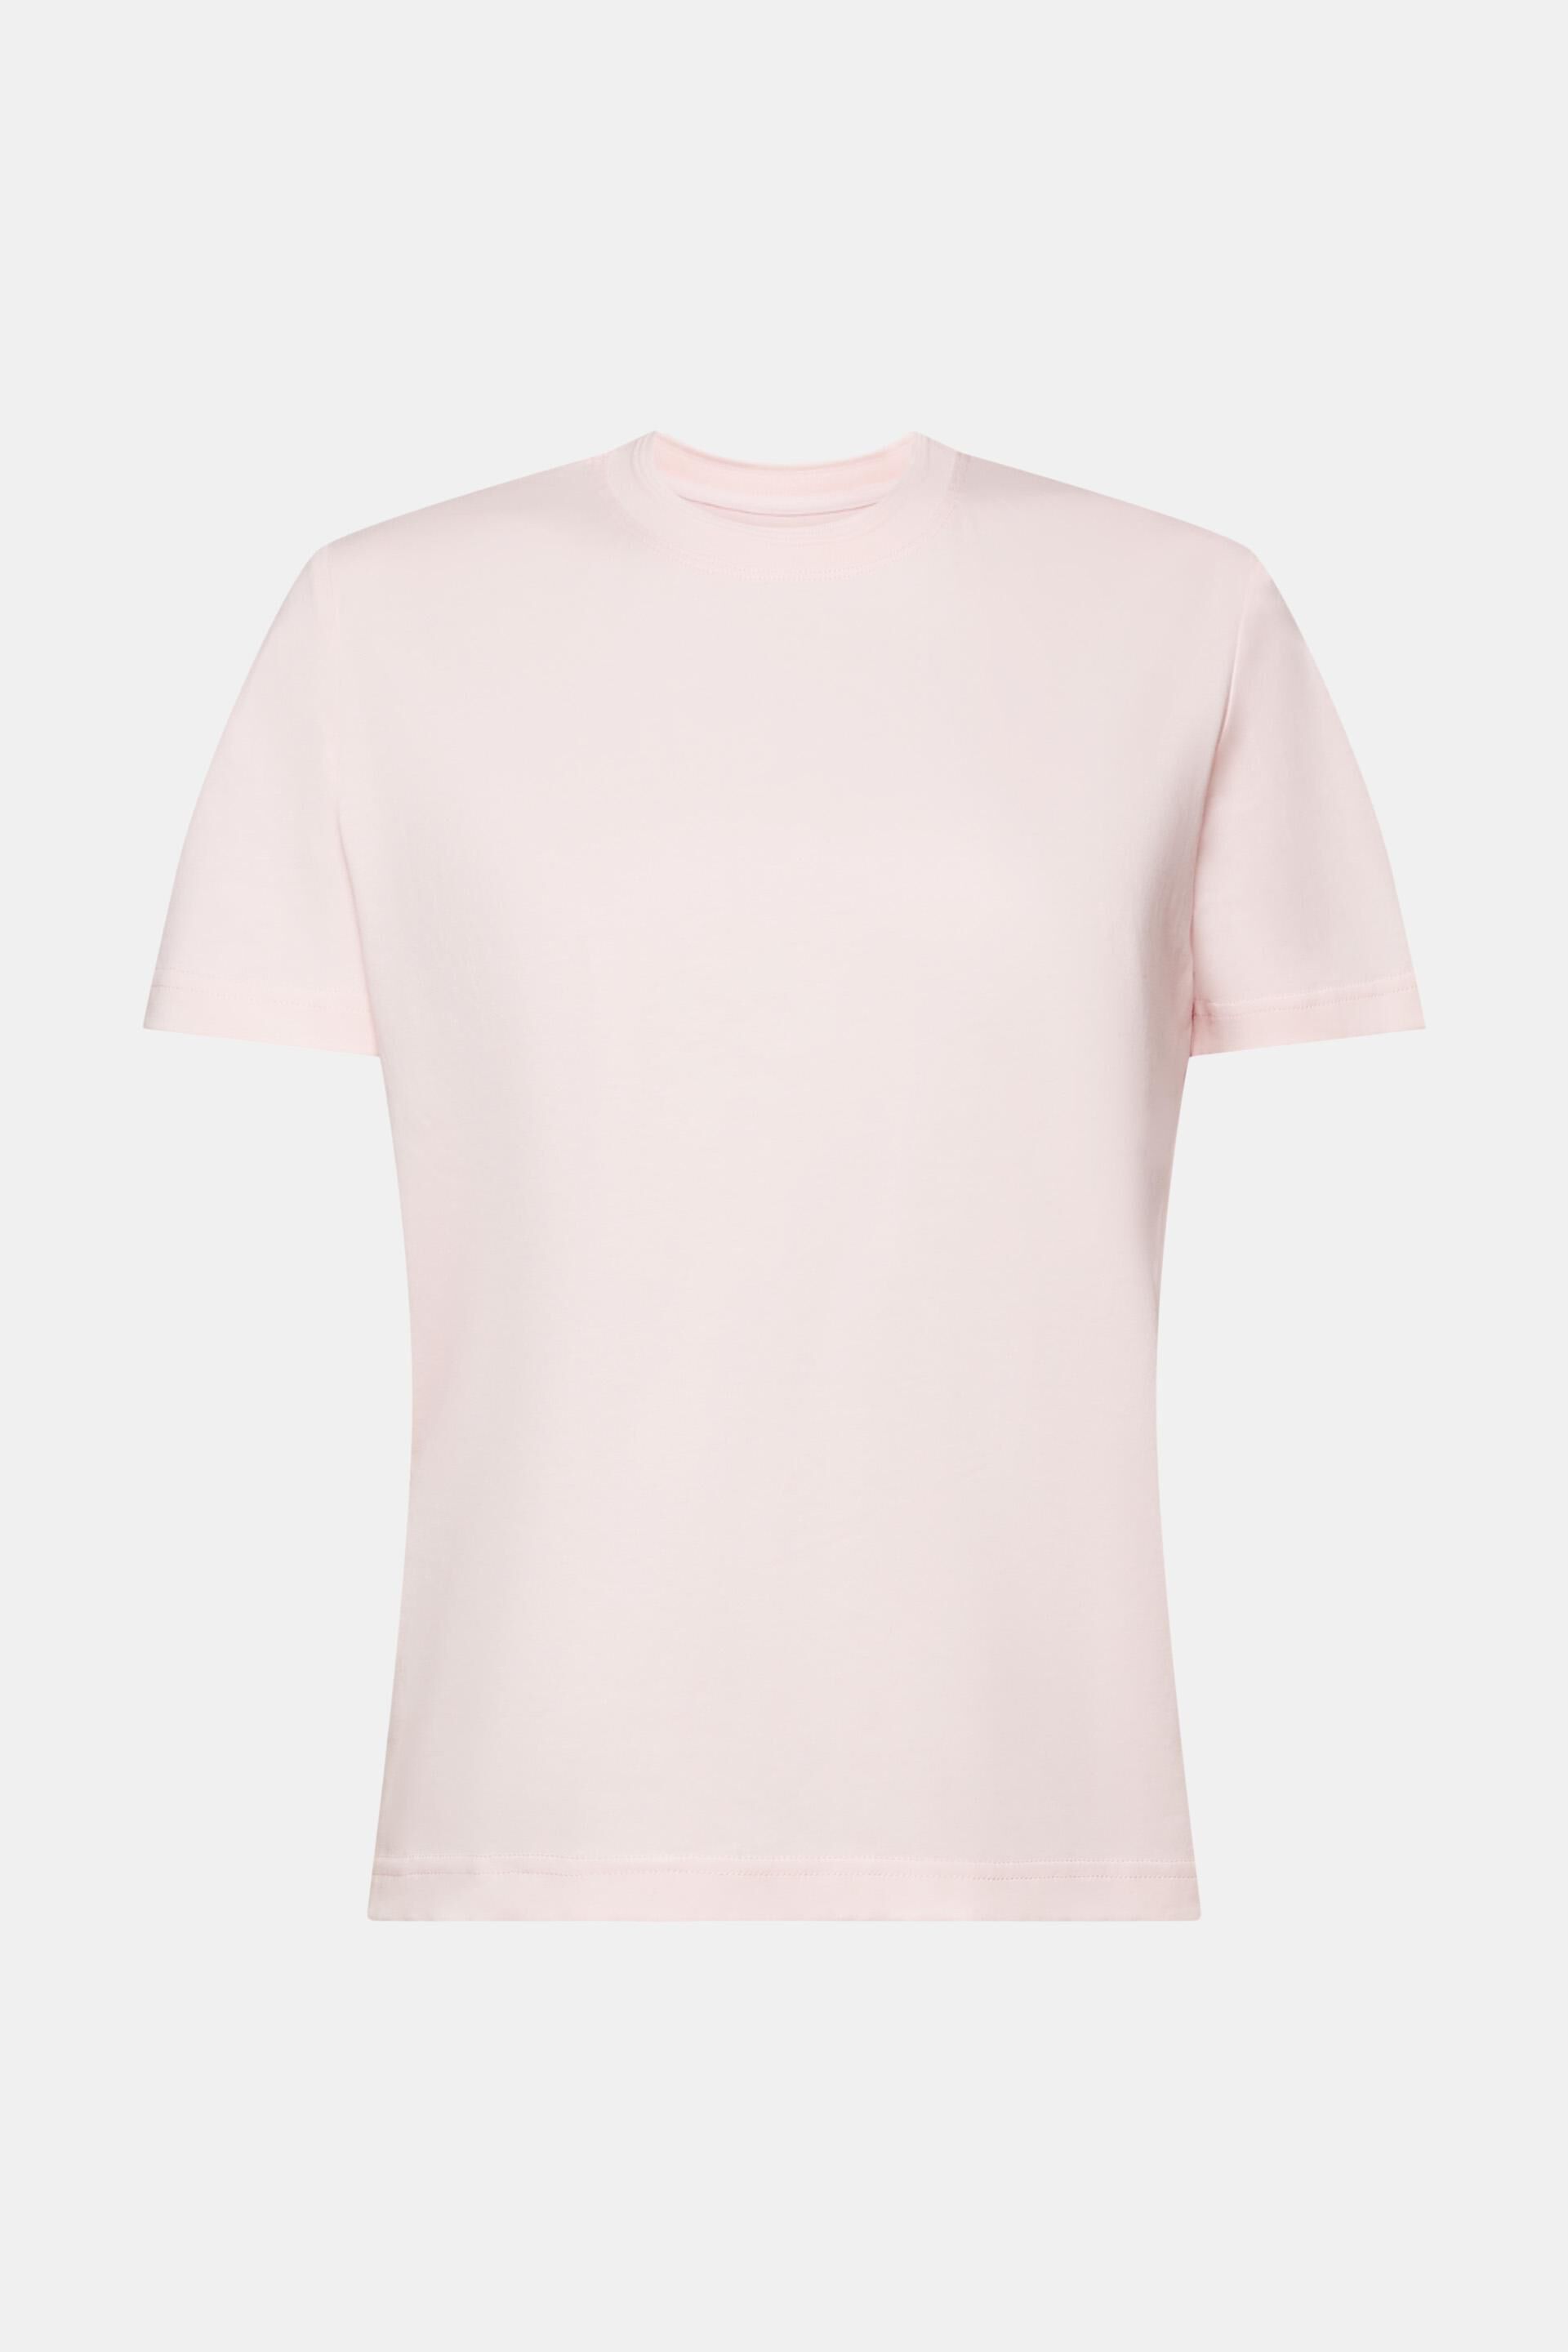 Esprit Baumwolle Rundhalsausschnitt, % mit 100 T-Shirt